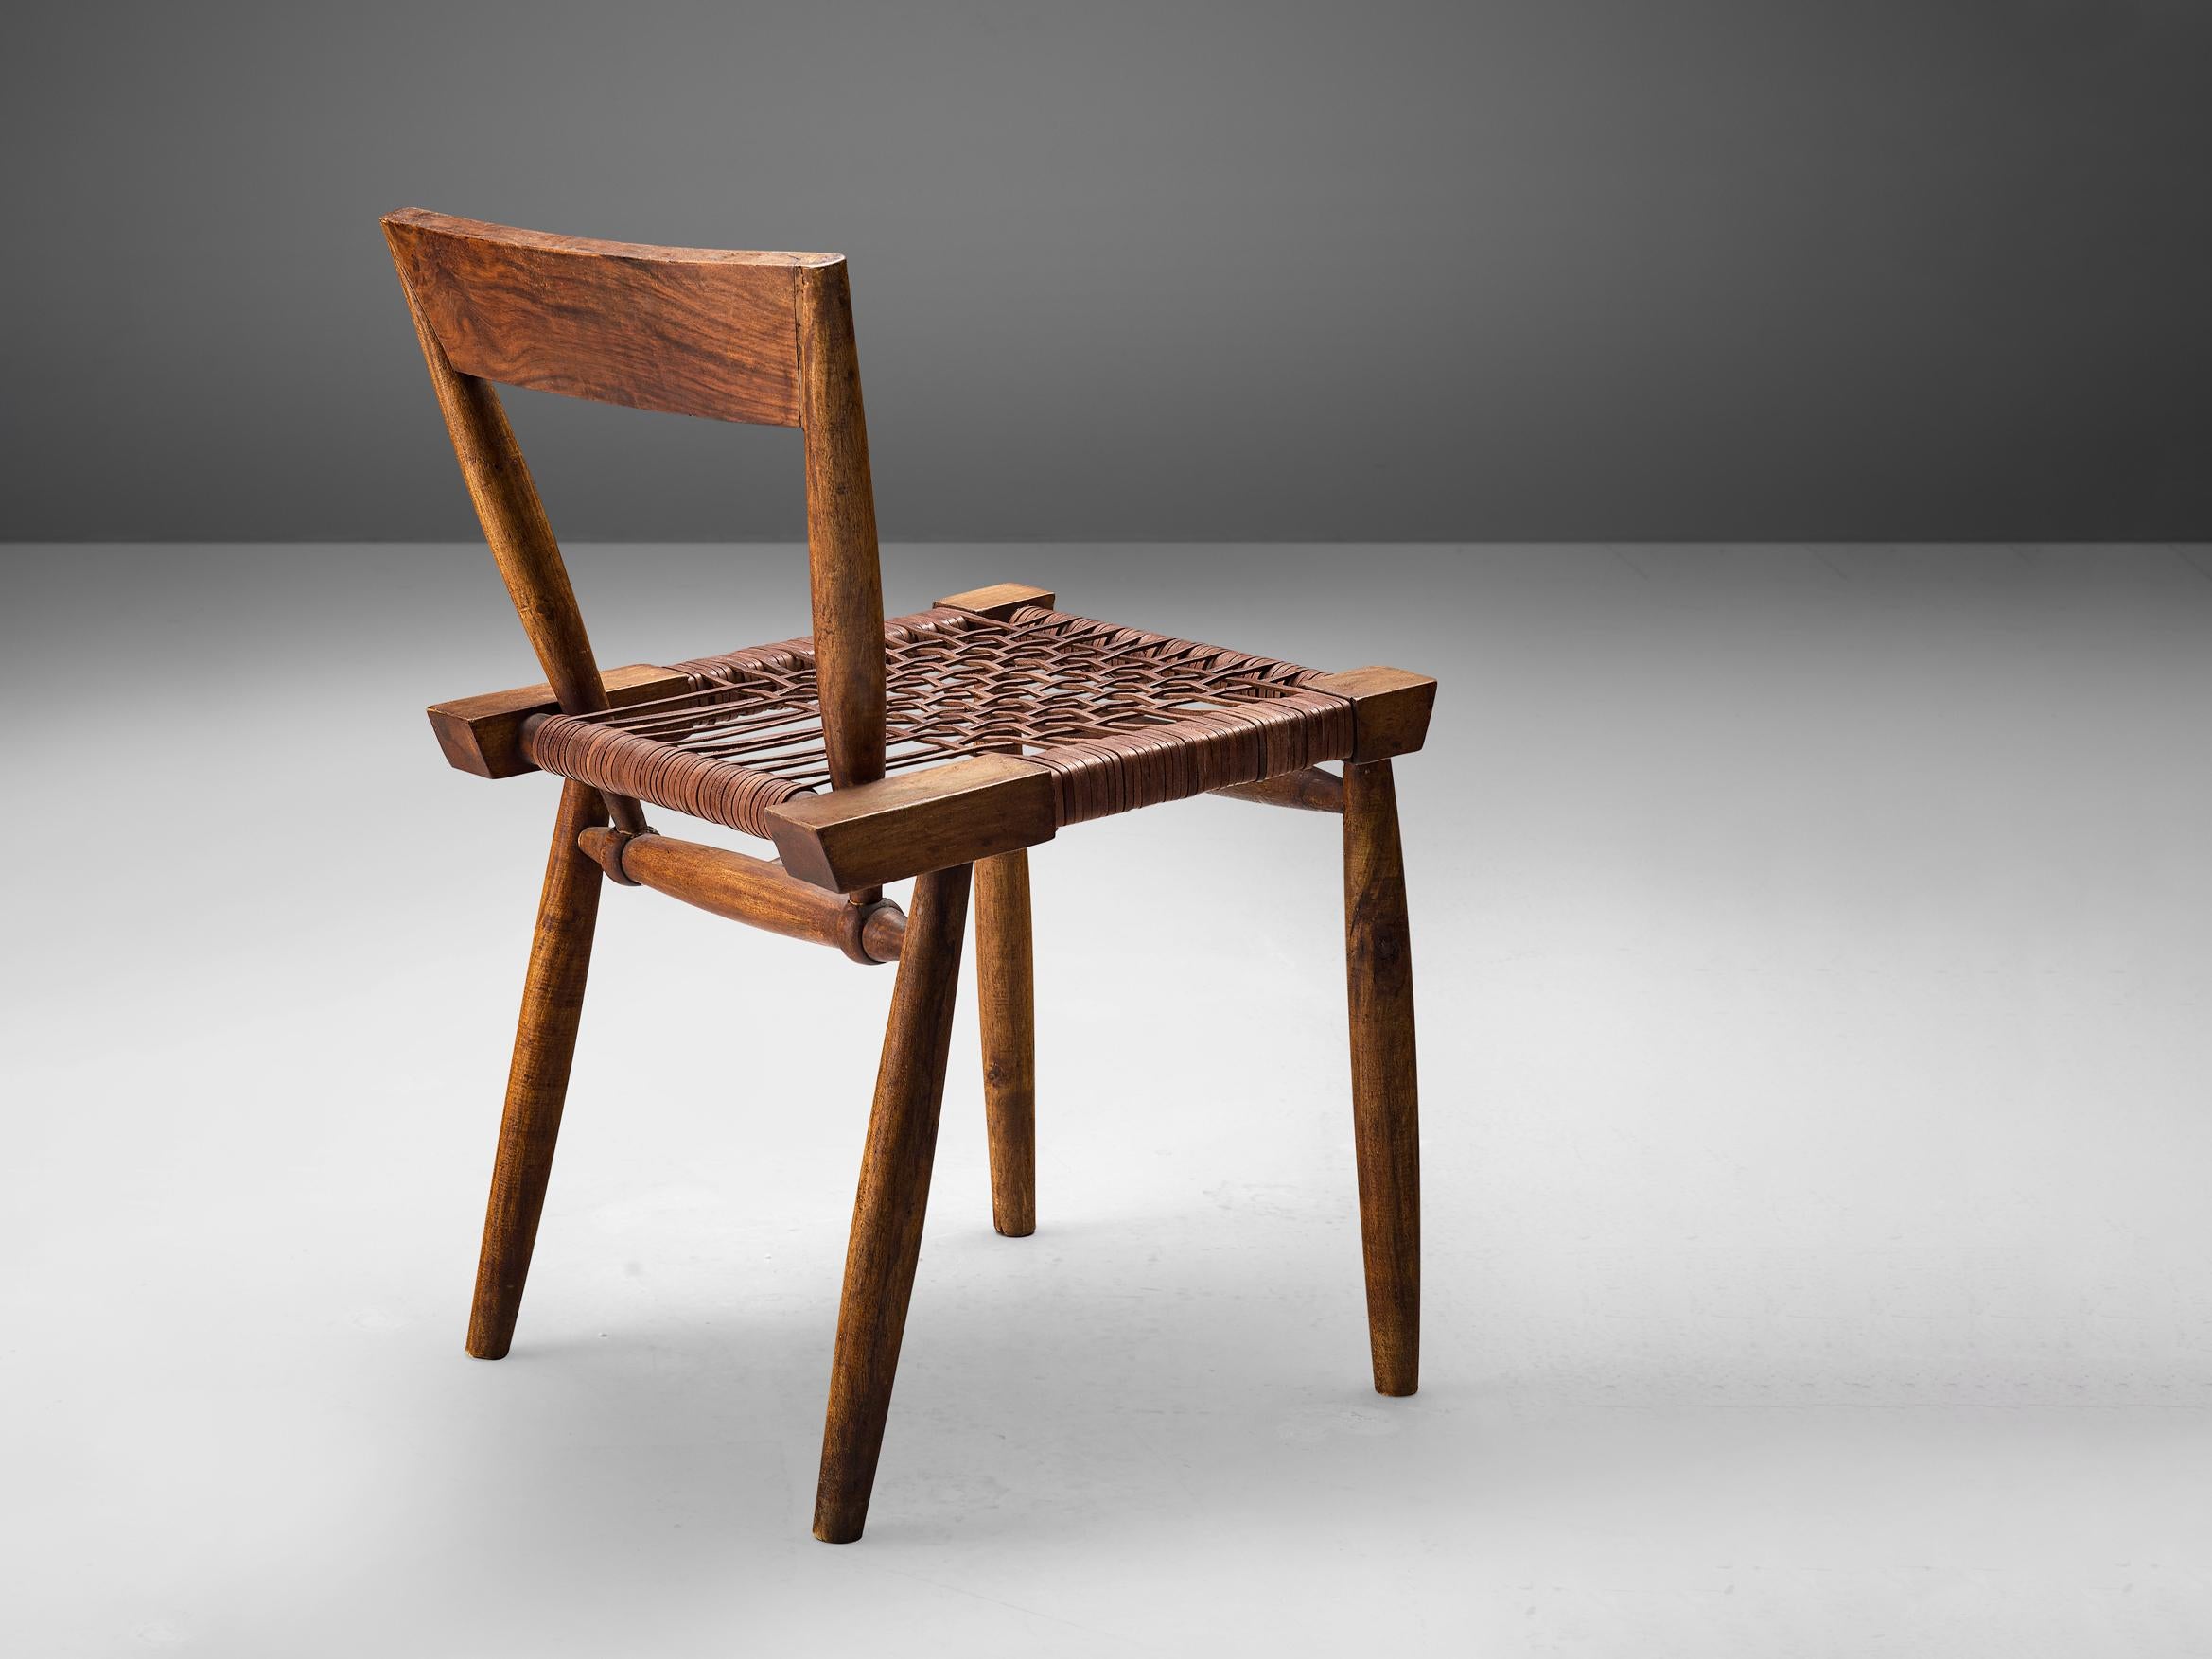 Beistellstuhl, Leder, gebeiztes Holz, Vereinigte Staaten, 1950er Jahre

Bewundernswerter handgefertigter Beistellstuhl aus den 1950er Jahren. Dieser Stuhl zeichnet sich durch eine Kombination verschiedener Formen aus, die ein wunderbares,